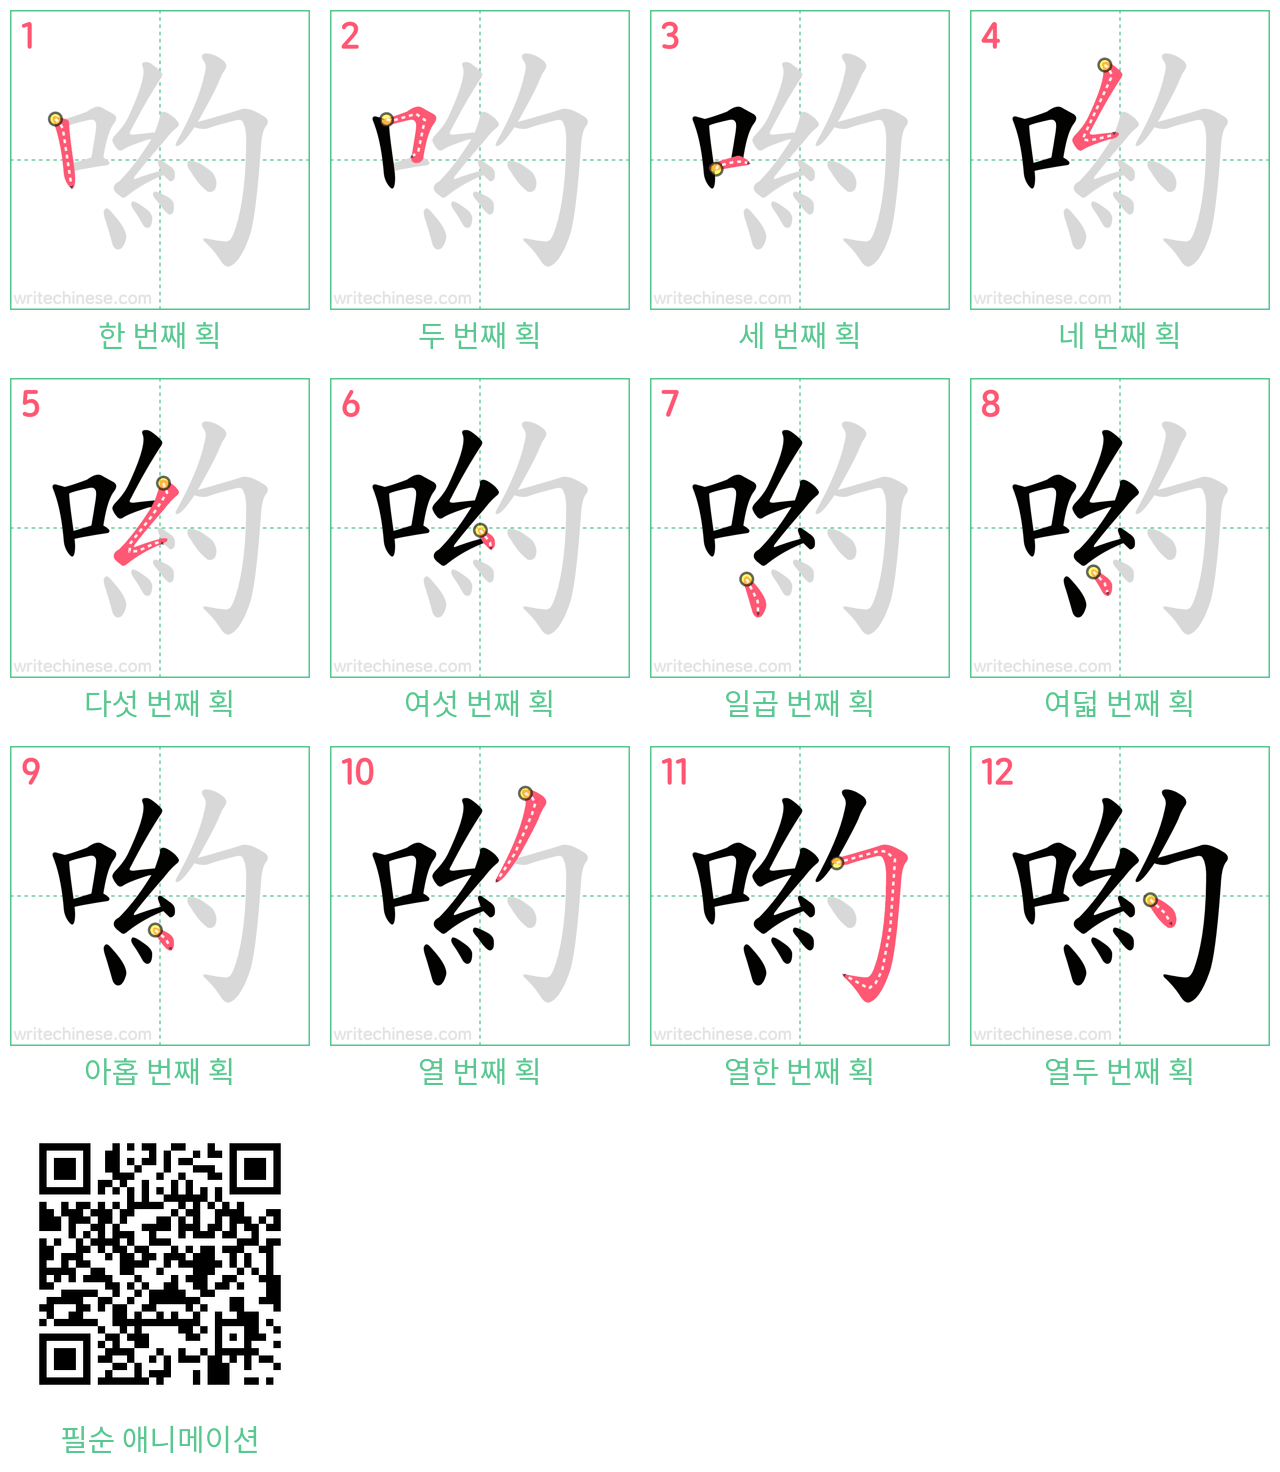 喲 step-by-step stroke order diagrams